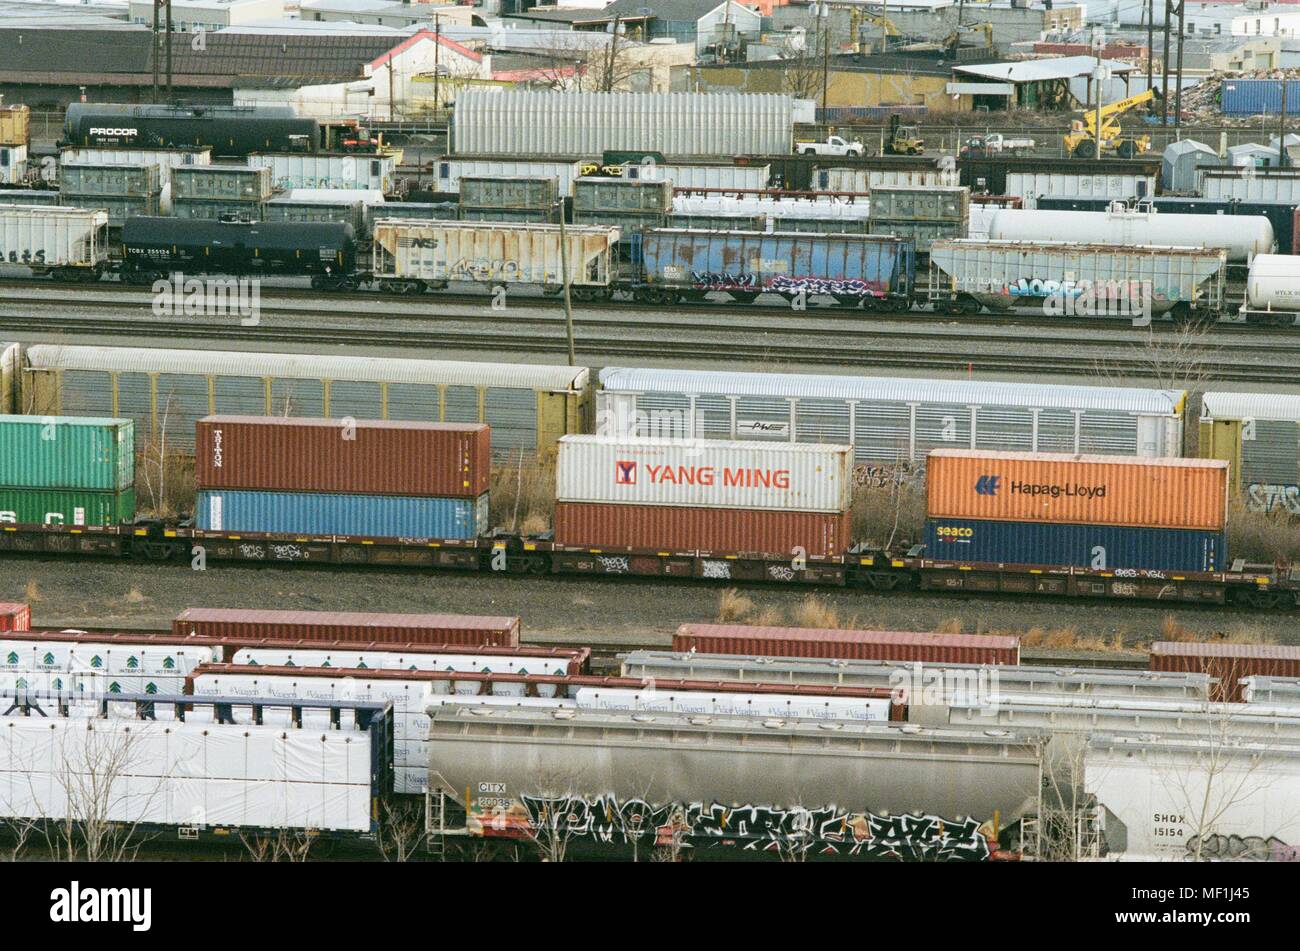 Mehrere Güterzüge mit intermodalen Container sind im Schienenverkehr Yard in Newark, New Jersey sichtbar, einschließlich Behälter von Reedereien Yang Ming und Hapag Lloyd, 18. März 2018. () Stockfoto